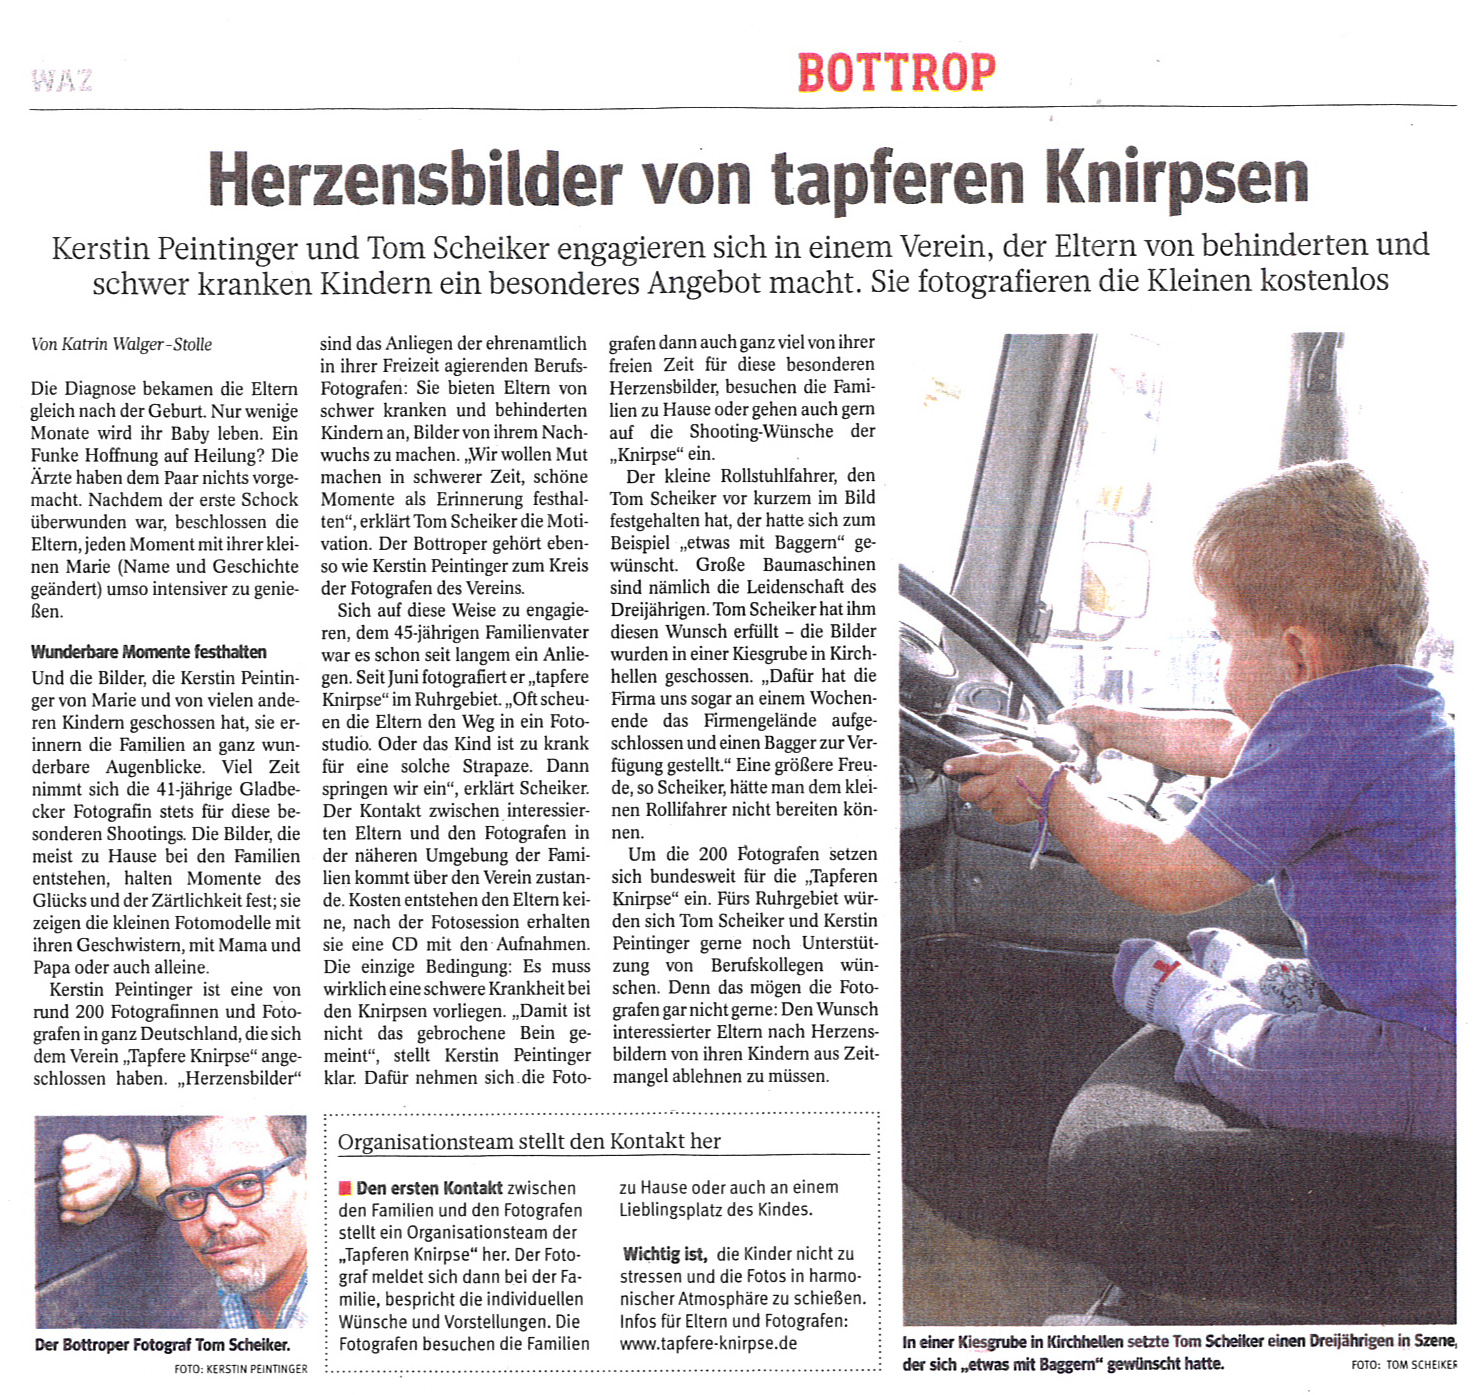 Artikel in der WAZ vom 09. Januar 2014 im Bottroper Lokalteil